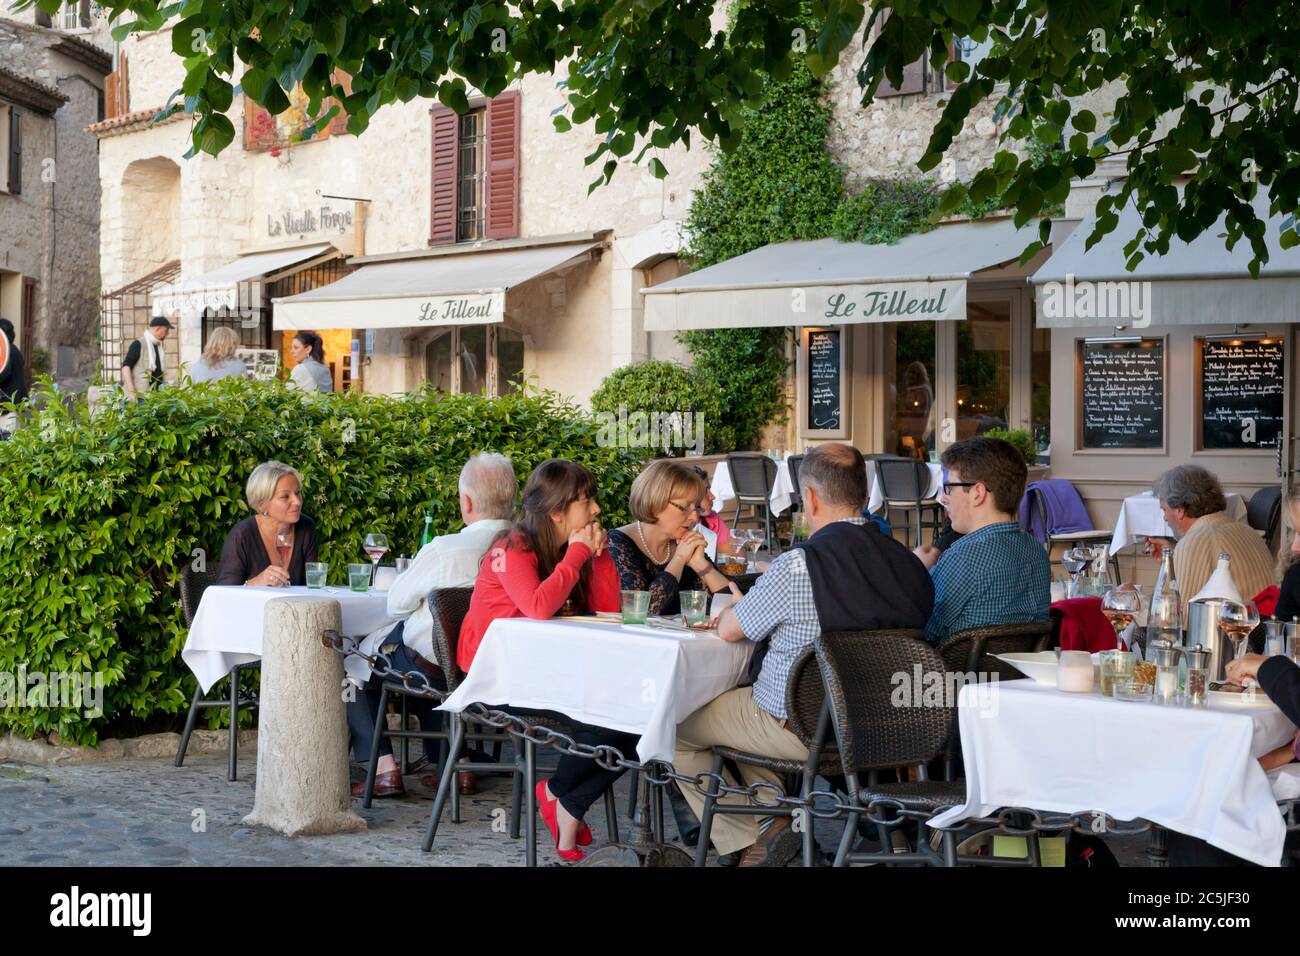 Le Tilleul restaurant, Saint-Paul-de-Vence, Provence-Alpes-Cote d'Azur, France, Europe Stock Photo